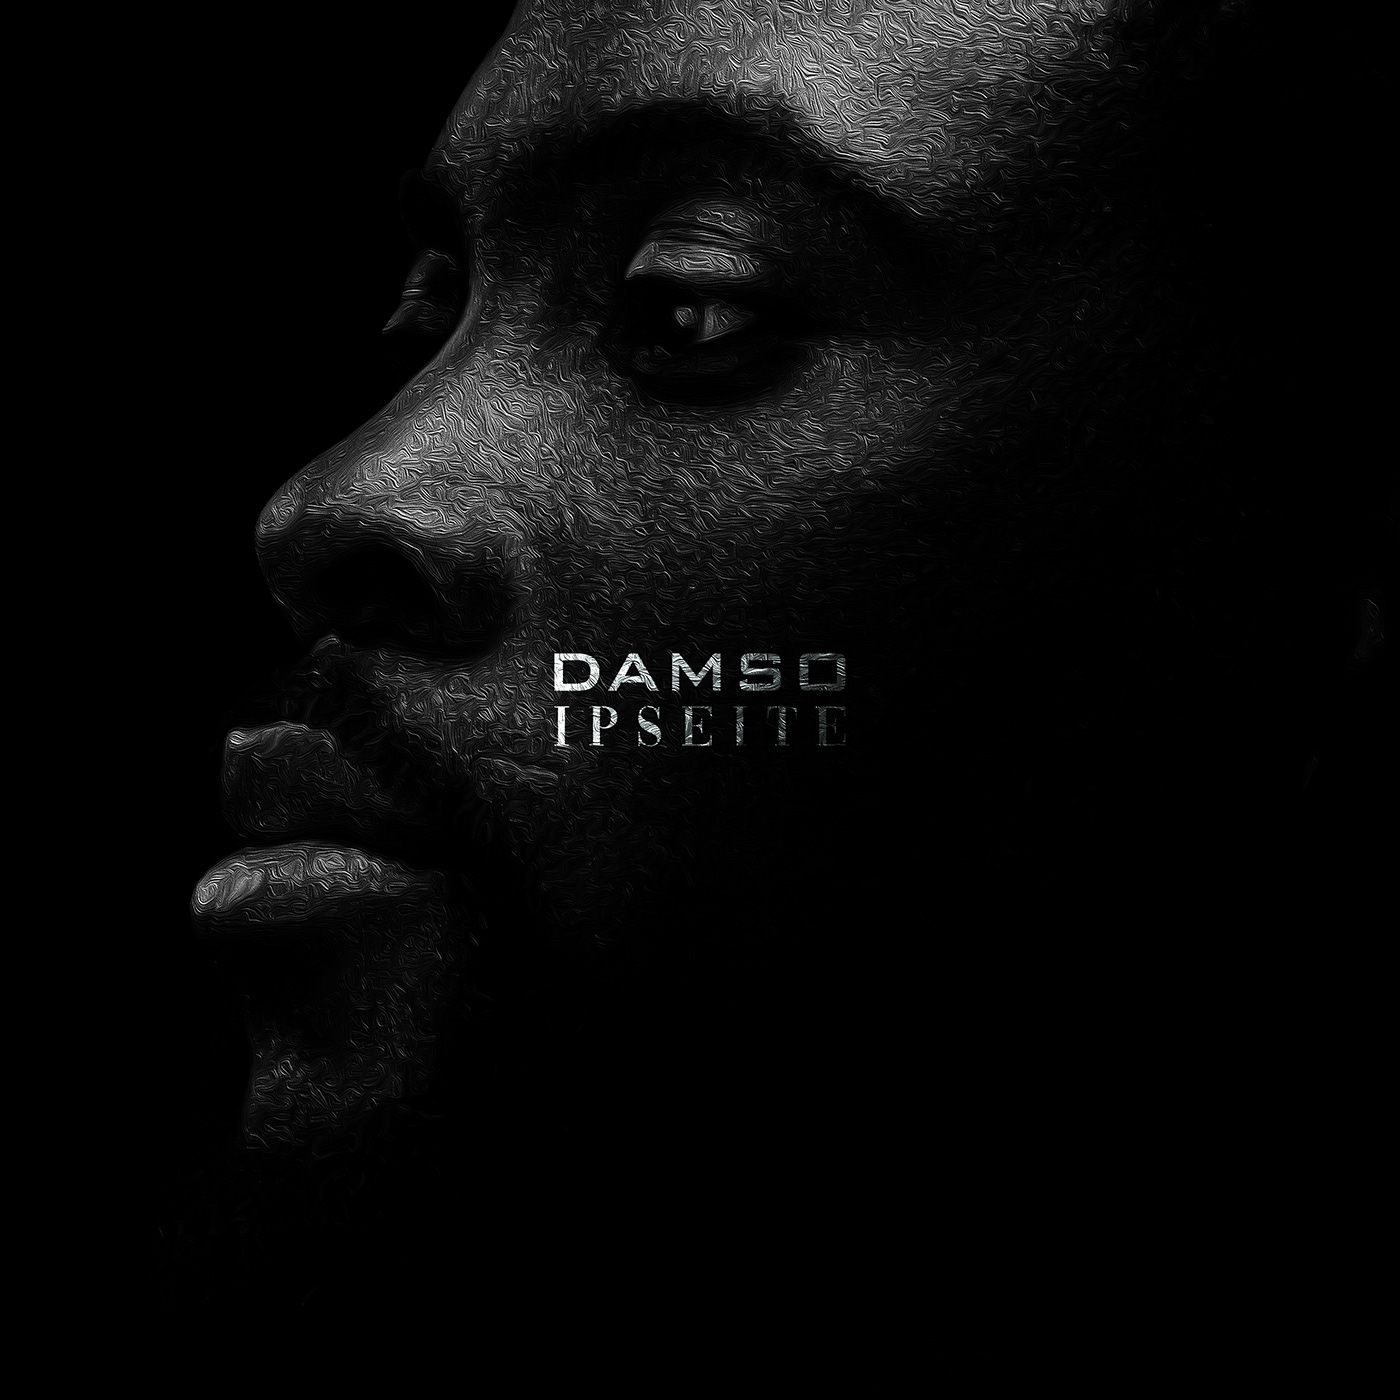 Album album cover concept cover damso graphic design  music rap Rap fr